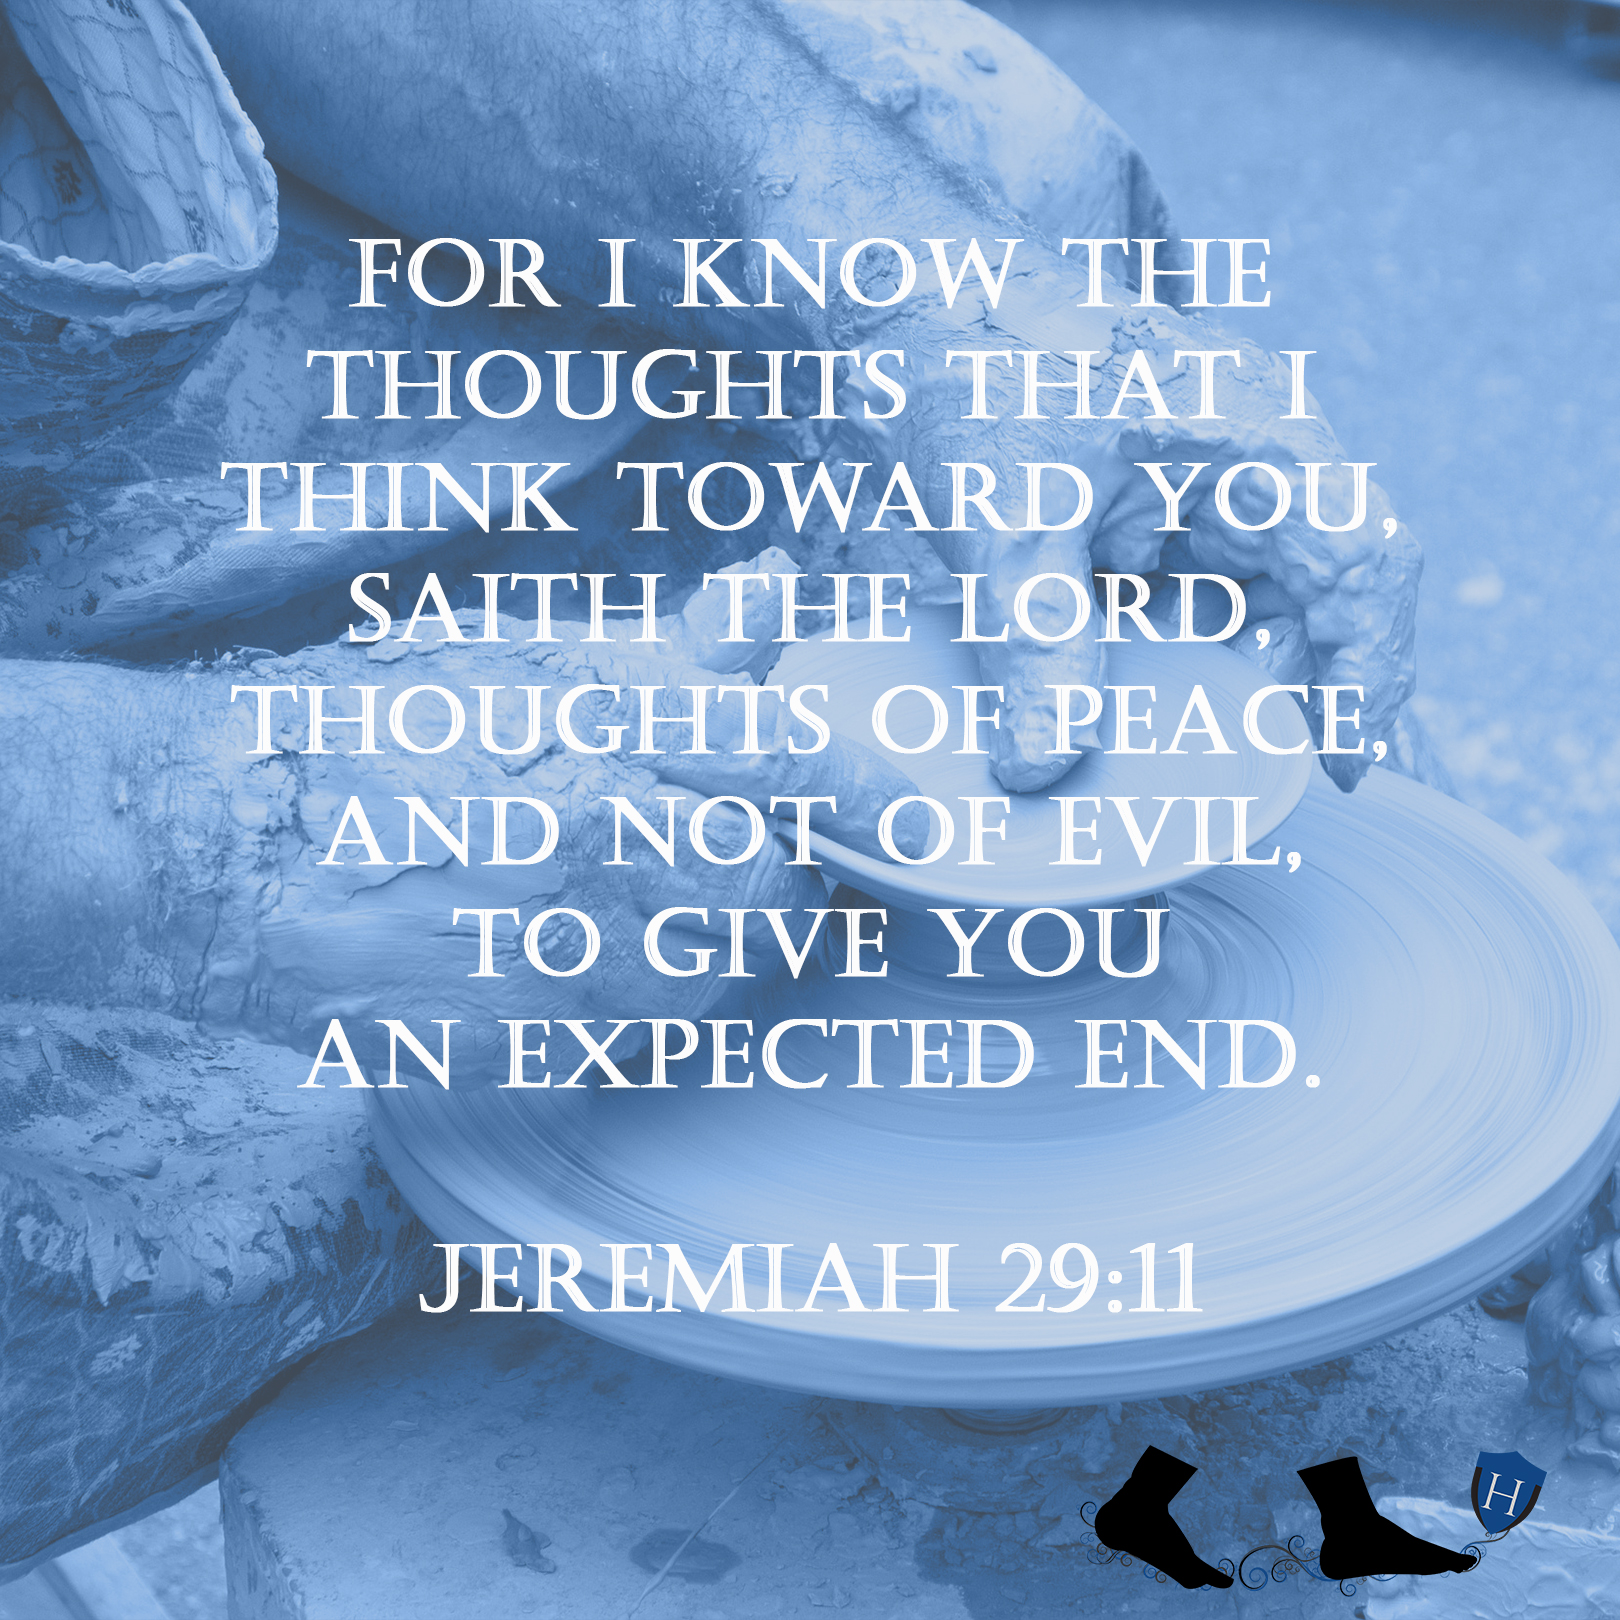 Jeremaih 29:11